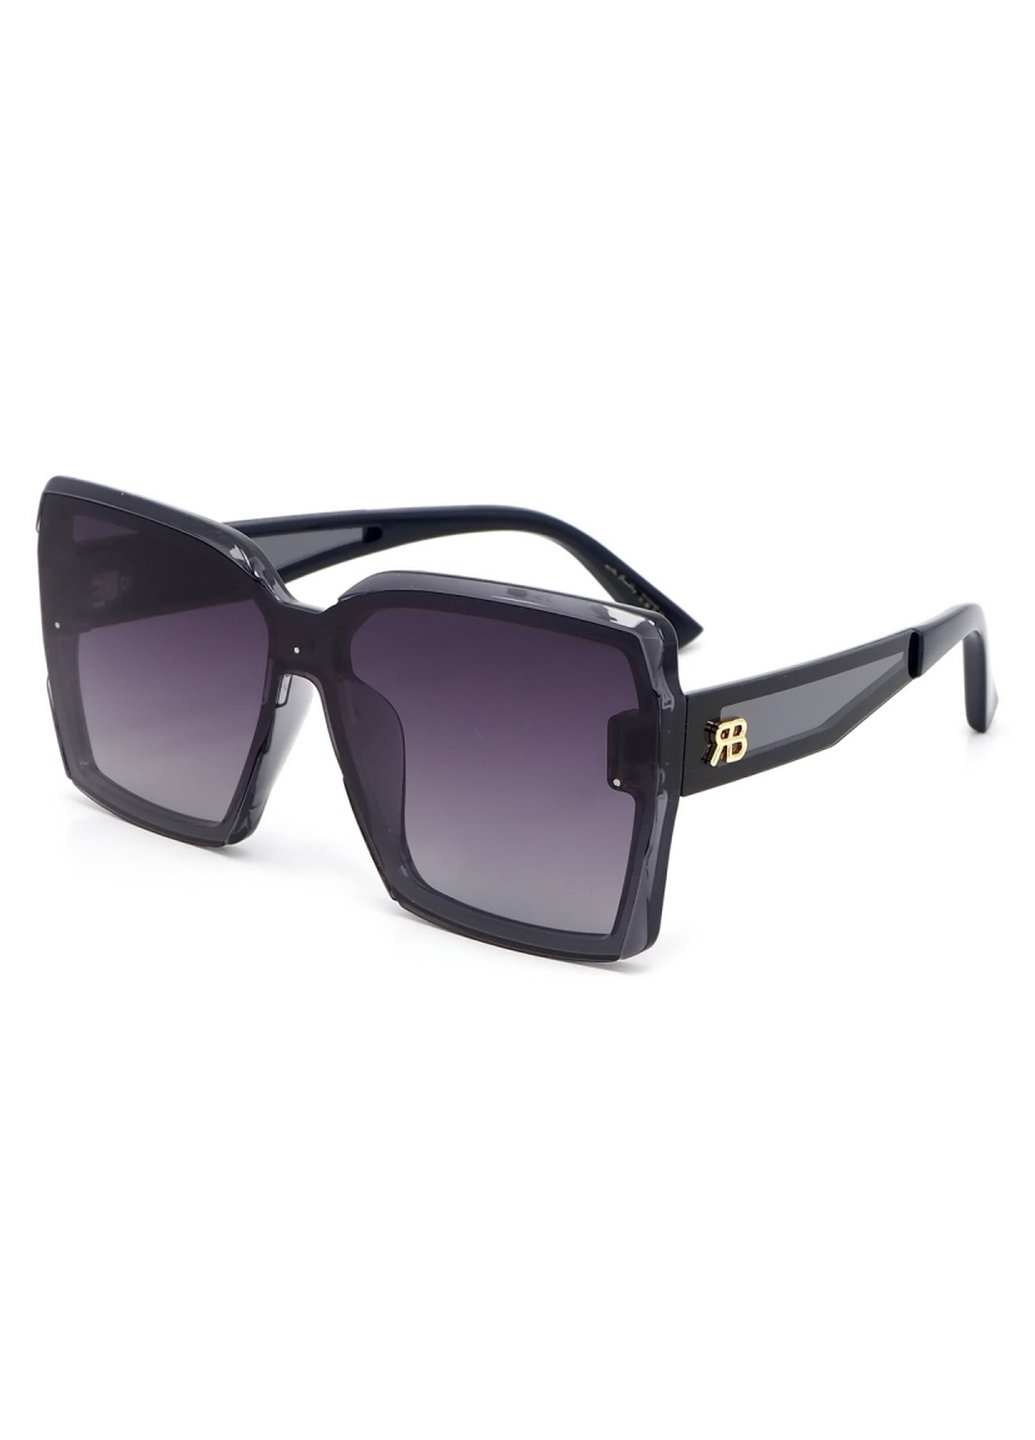 Купить Женские солнцезащитные очки Rita Bradley с поляризацией RB713 112026 в интернет-магазине